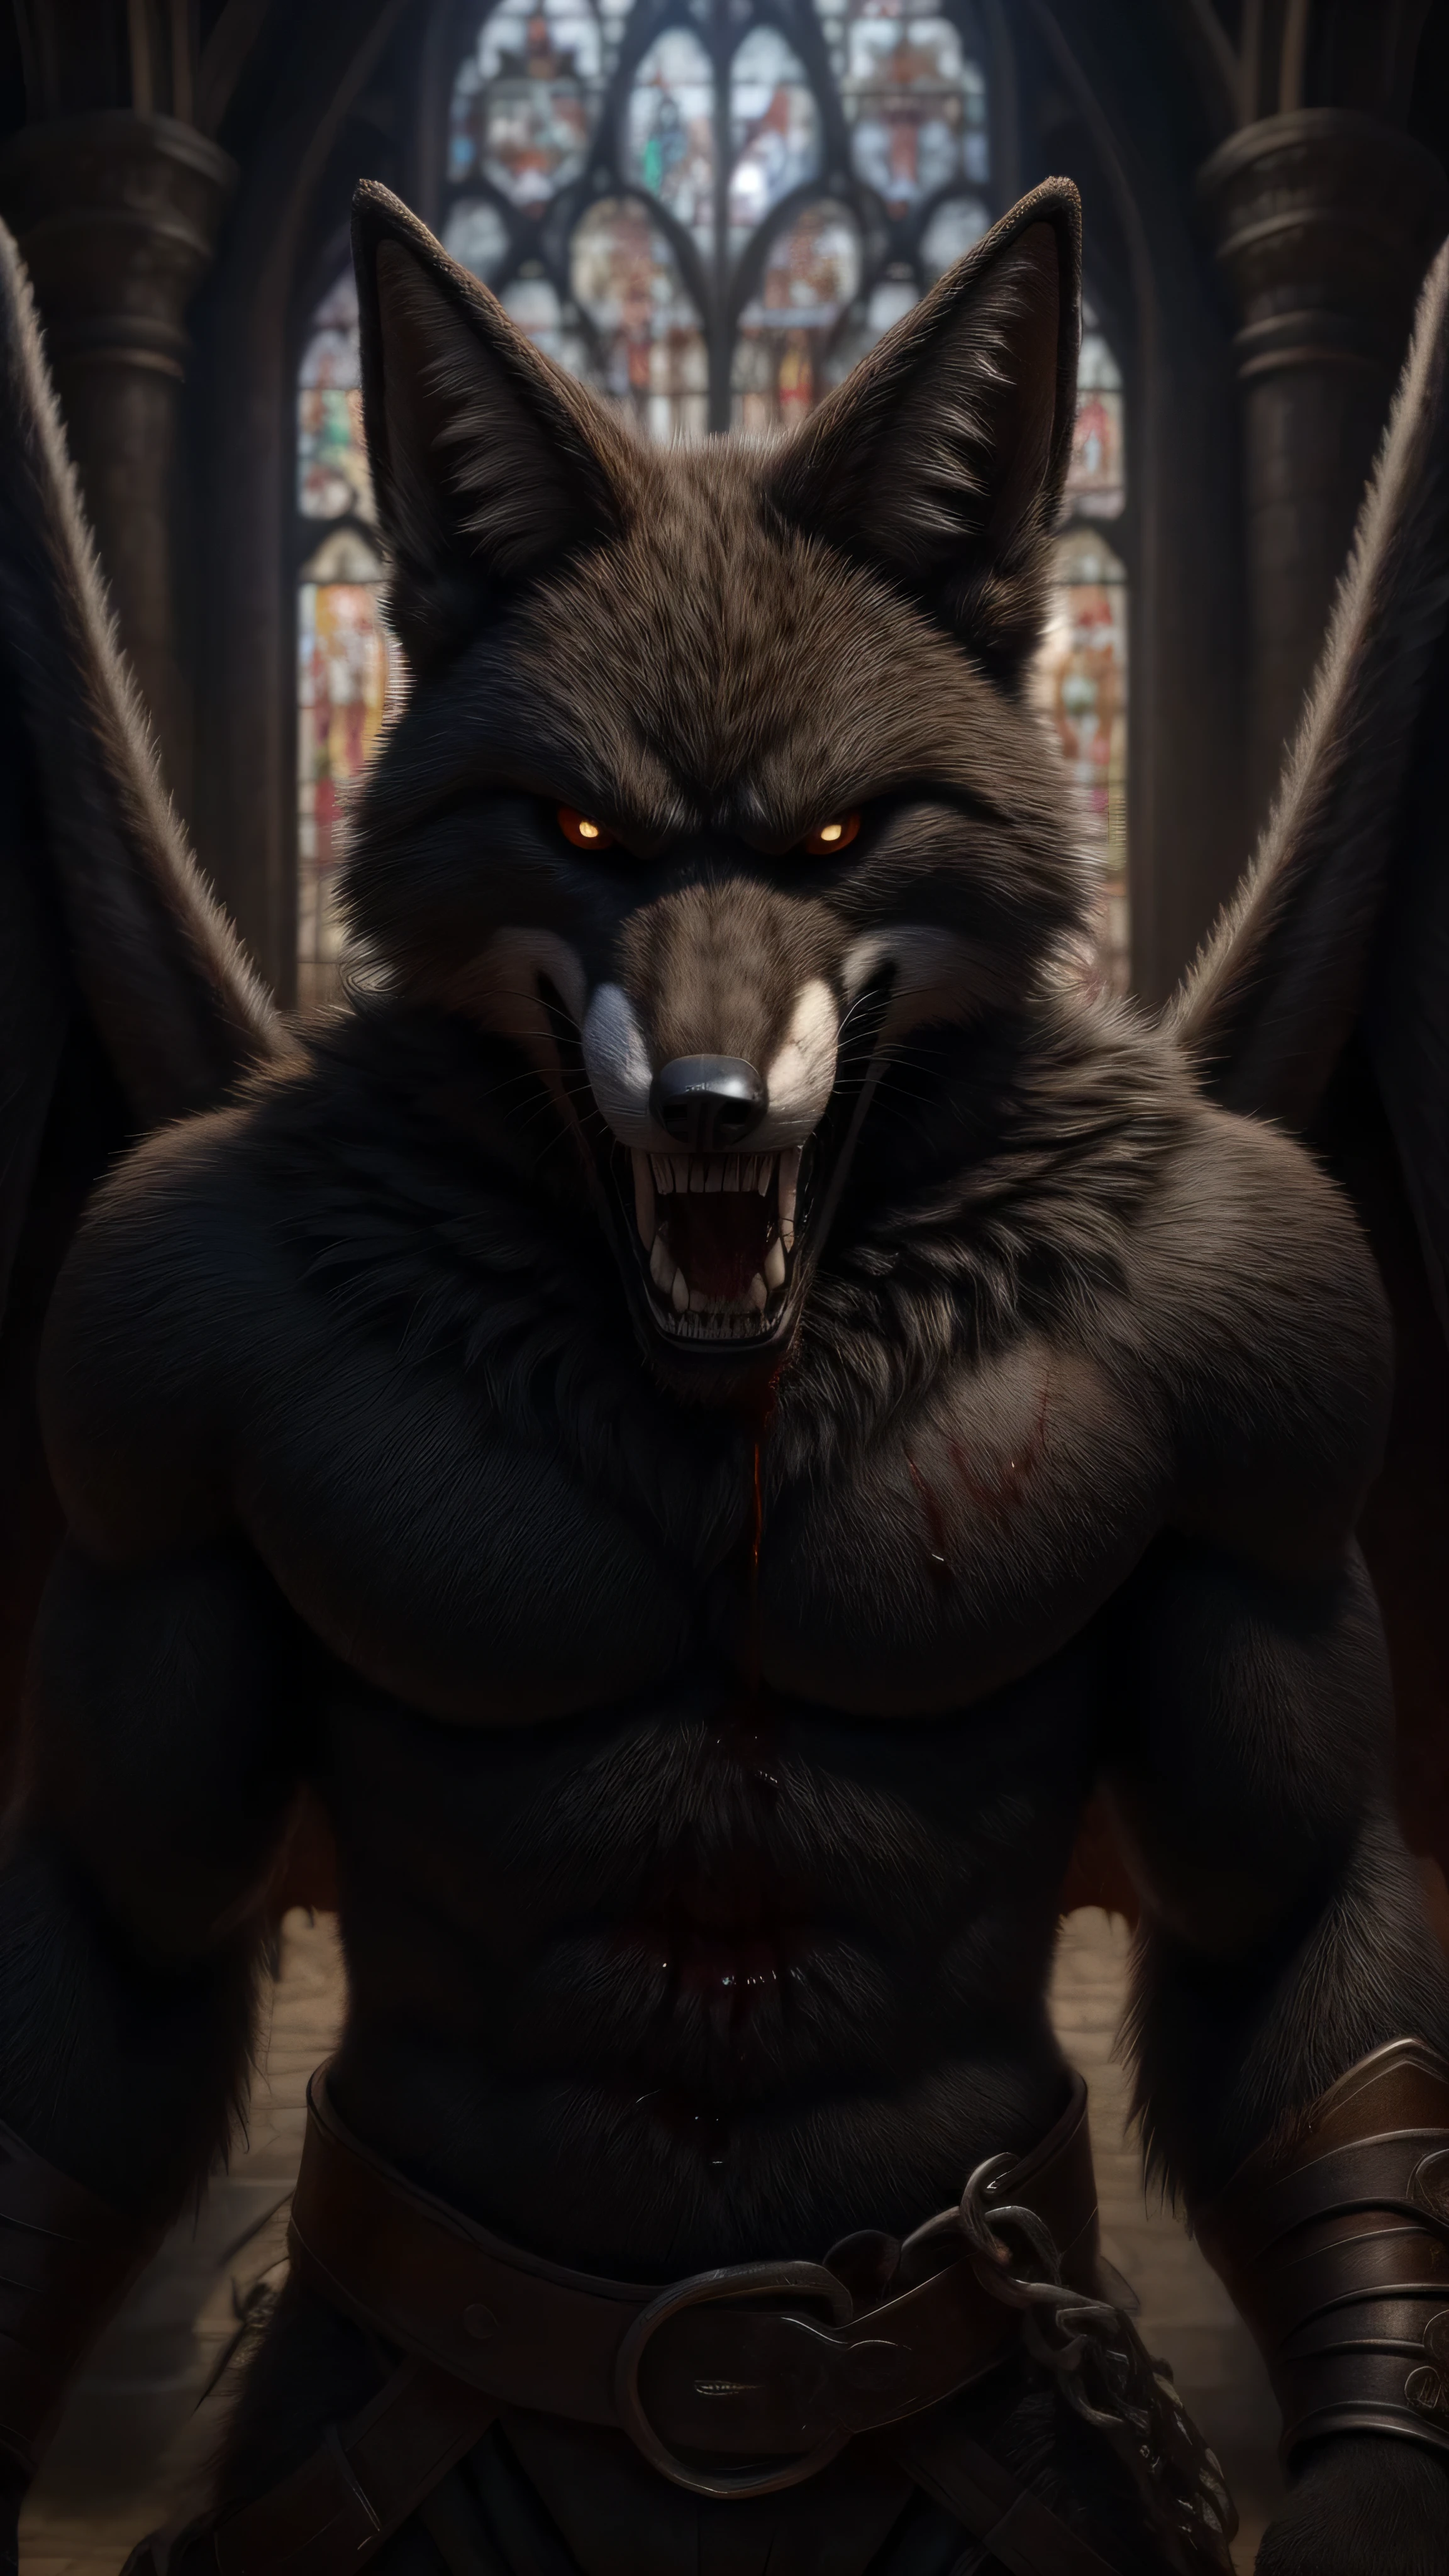 Dark Lord Fox Fursuit masculino mirando al espectador expresión seriamente enojada alas negras abiertas Dientes caninos súper afilados totalmente destruidos fondo medieval arte de terror de sangre